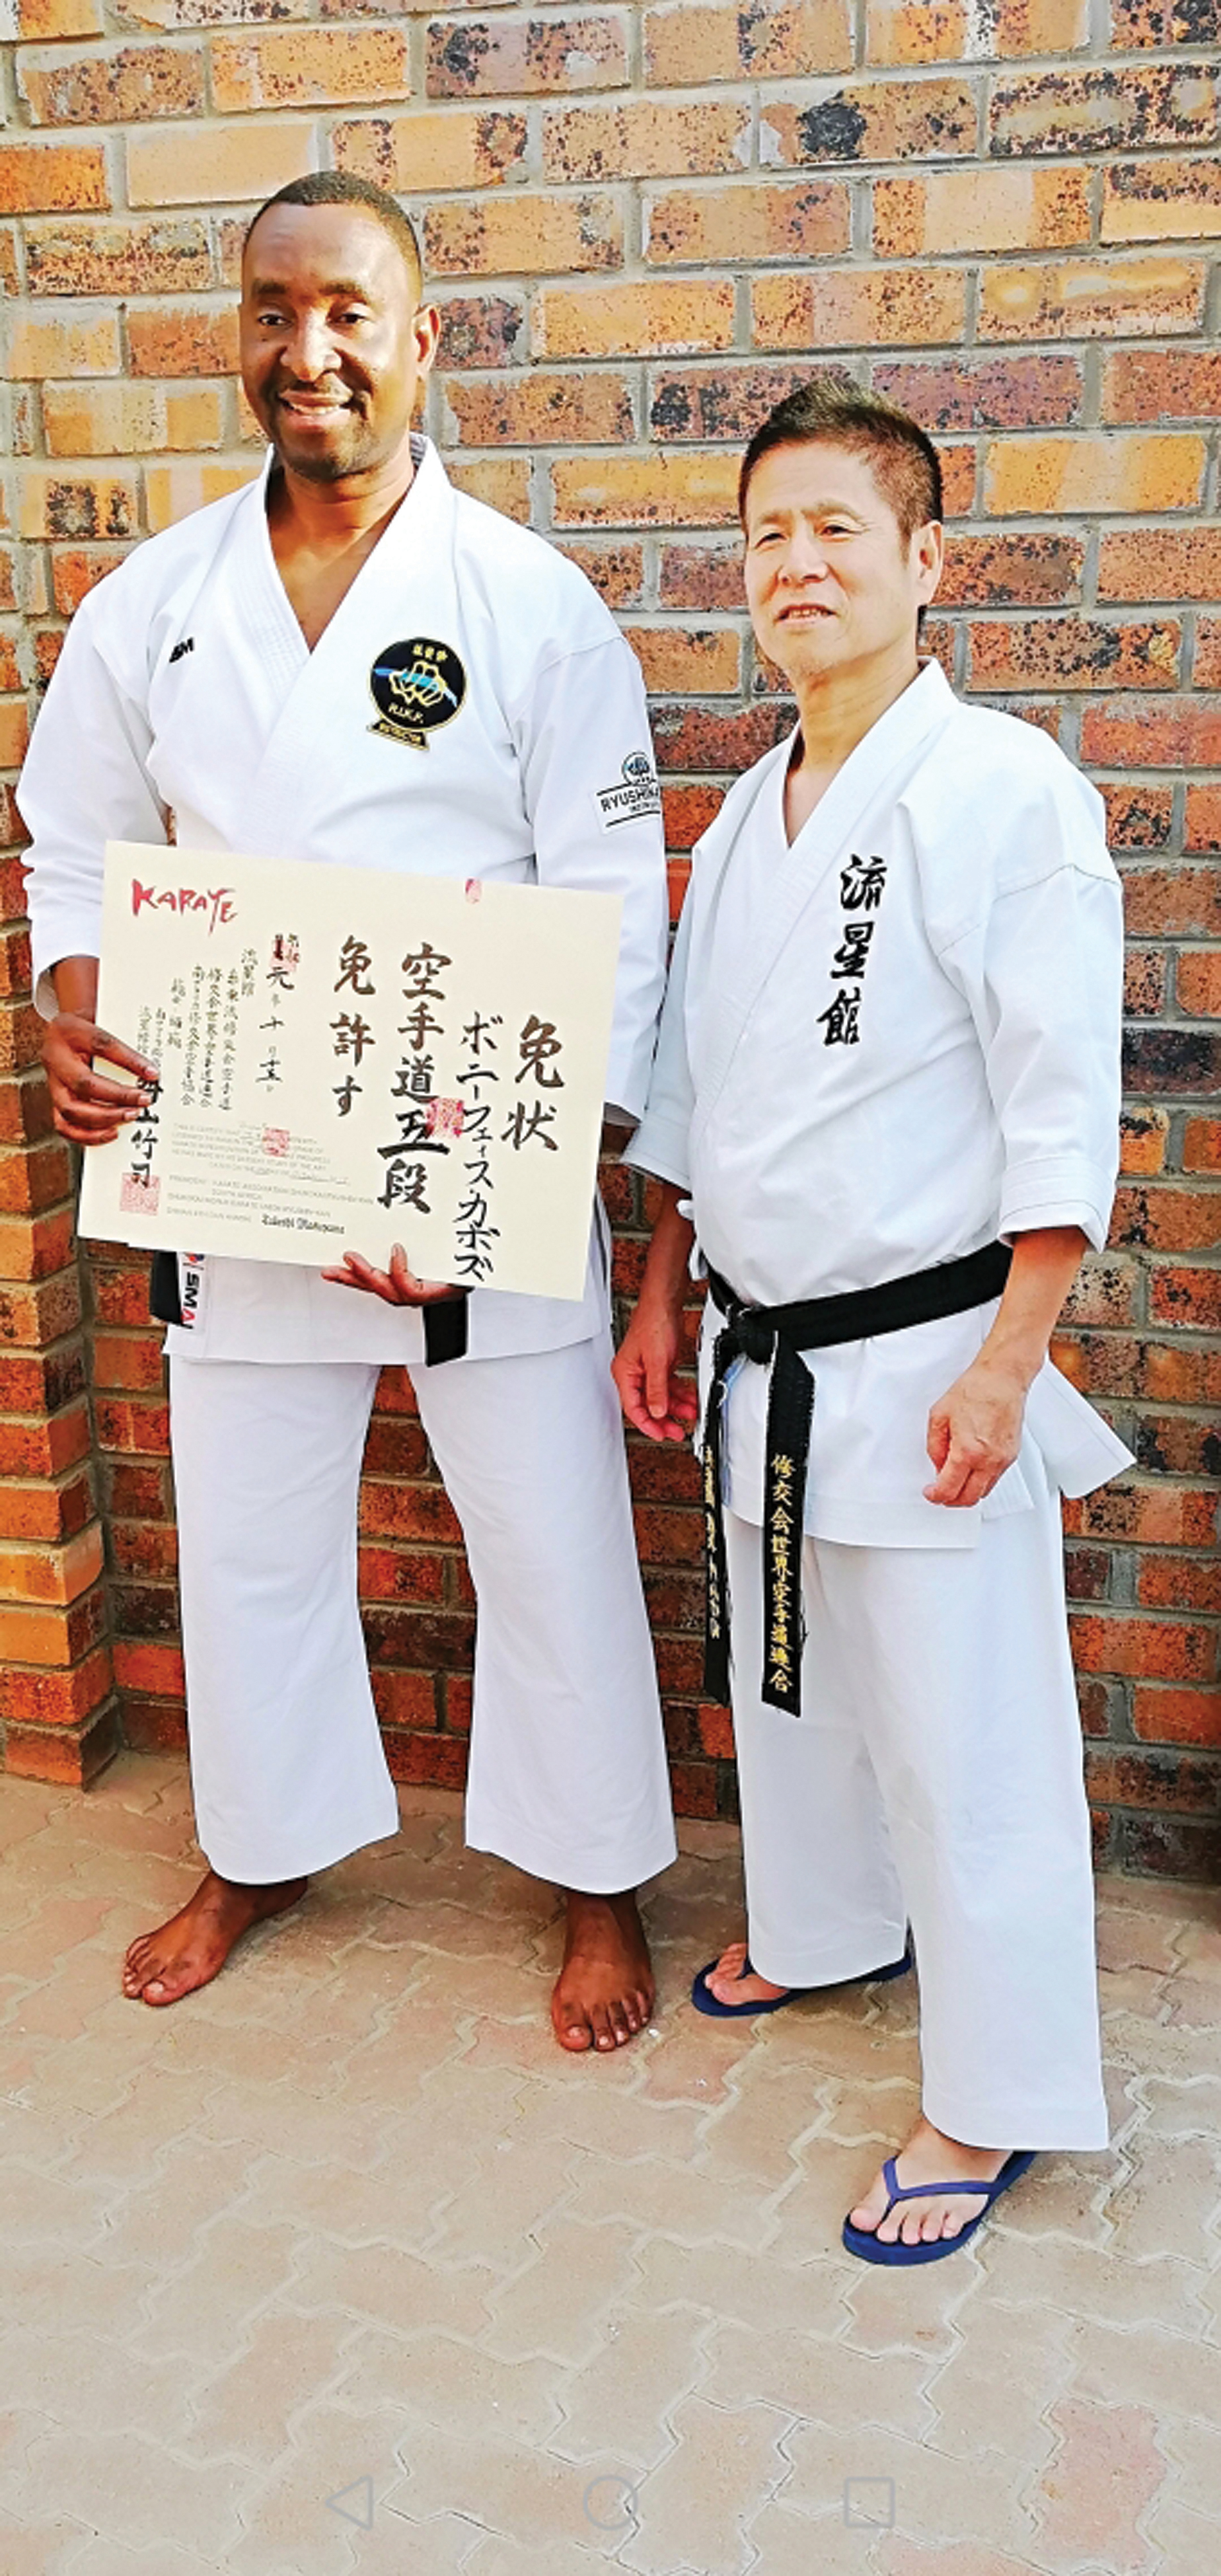 Kabozu gets black belt from world Karate Chief